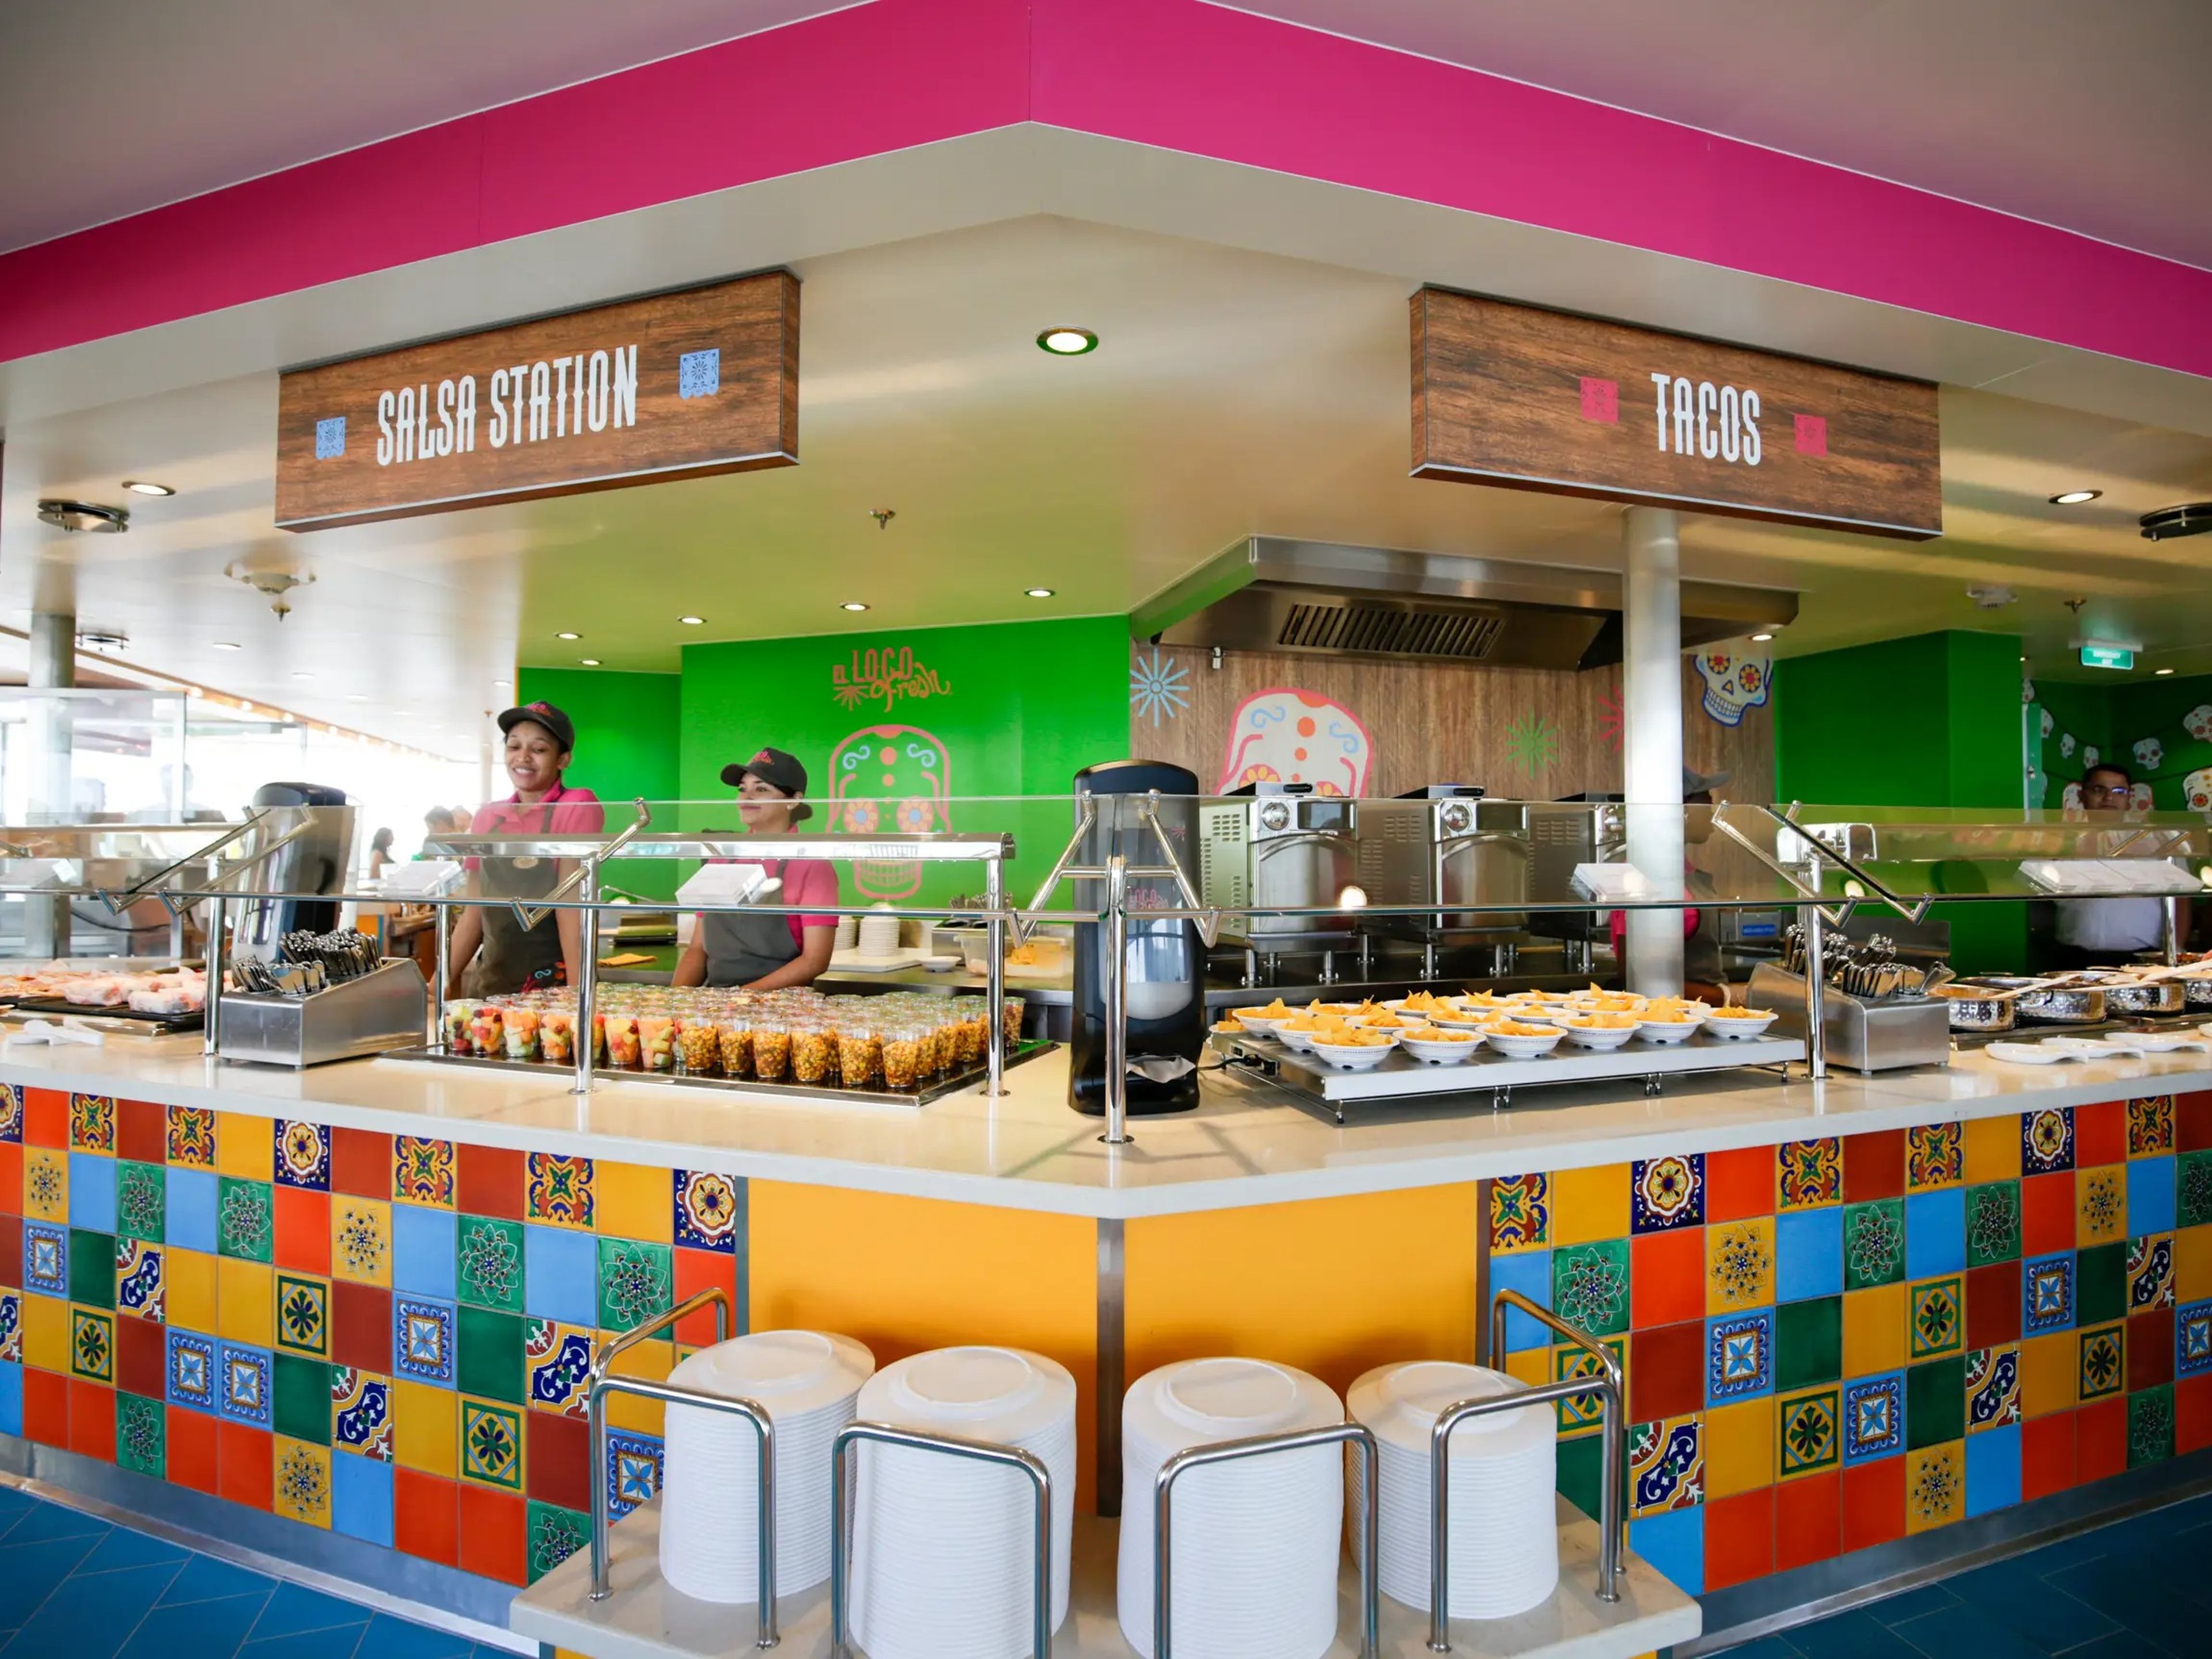 Aproximadamente la mitad de los restaurantes del Icon of the Seas son gratuitos, incluido el buffet El Loco Fresh, de inspiración mexicana.